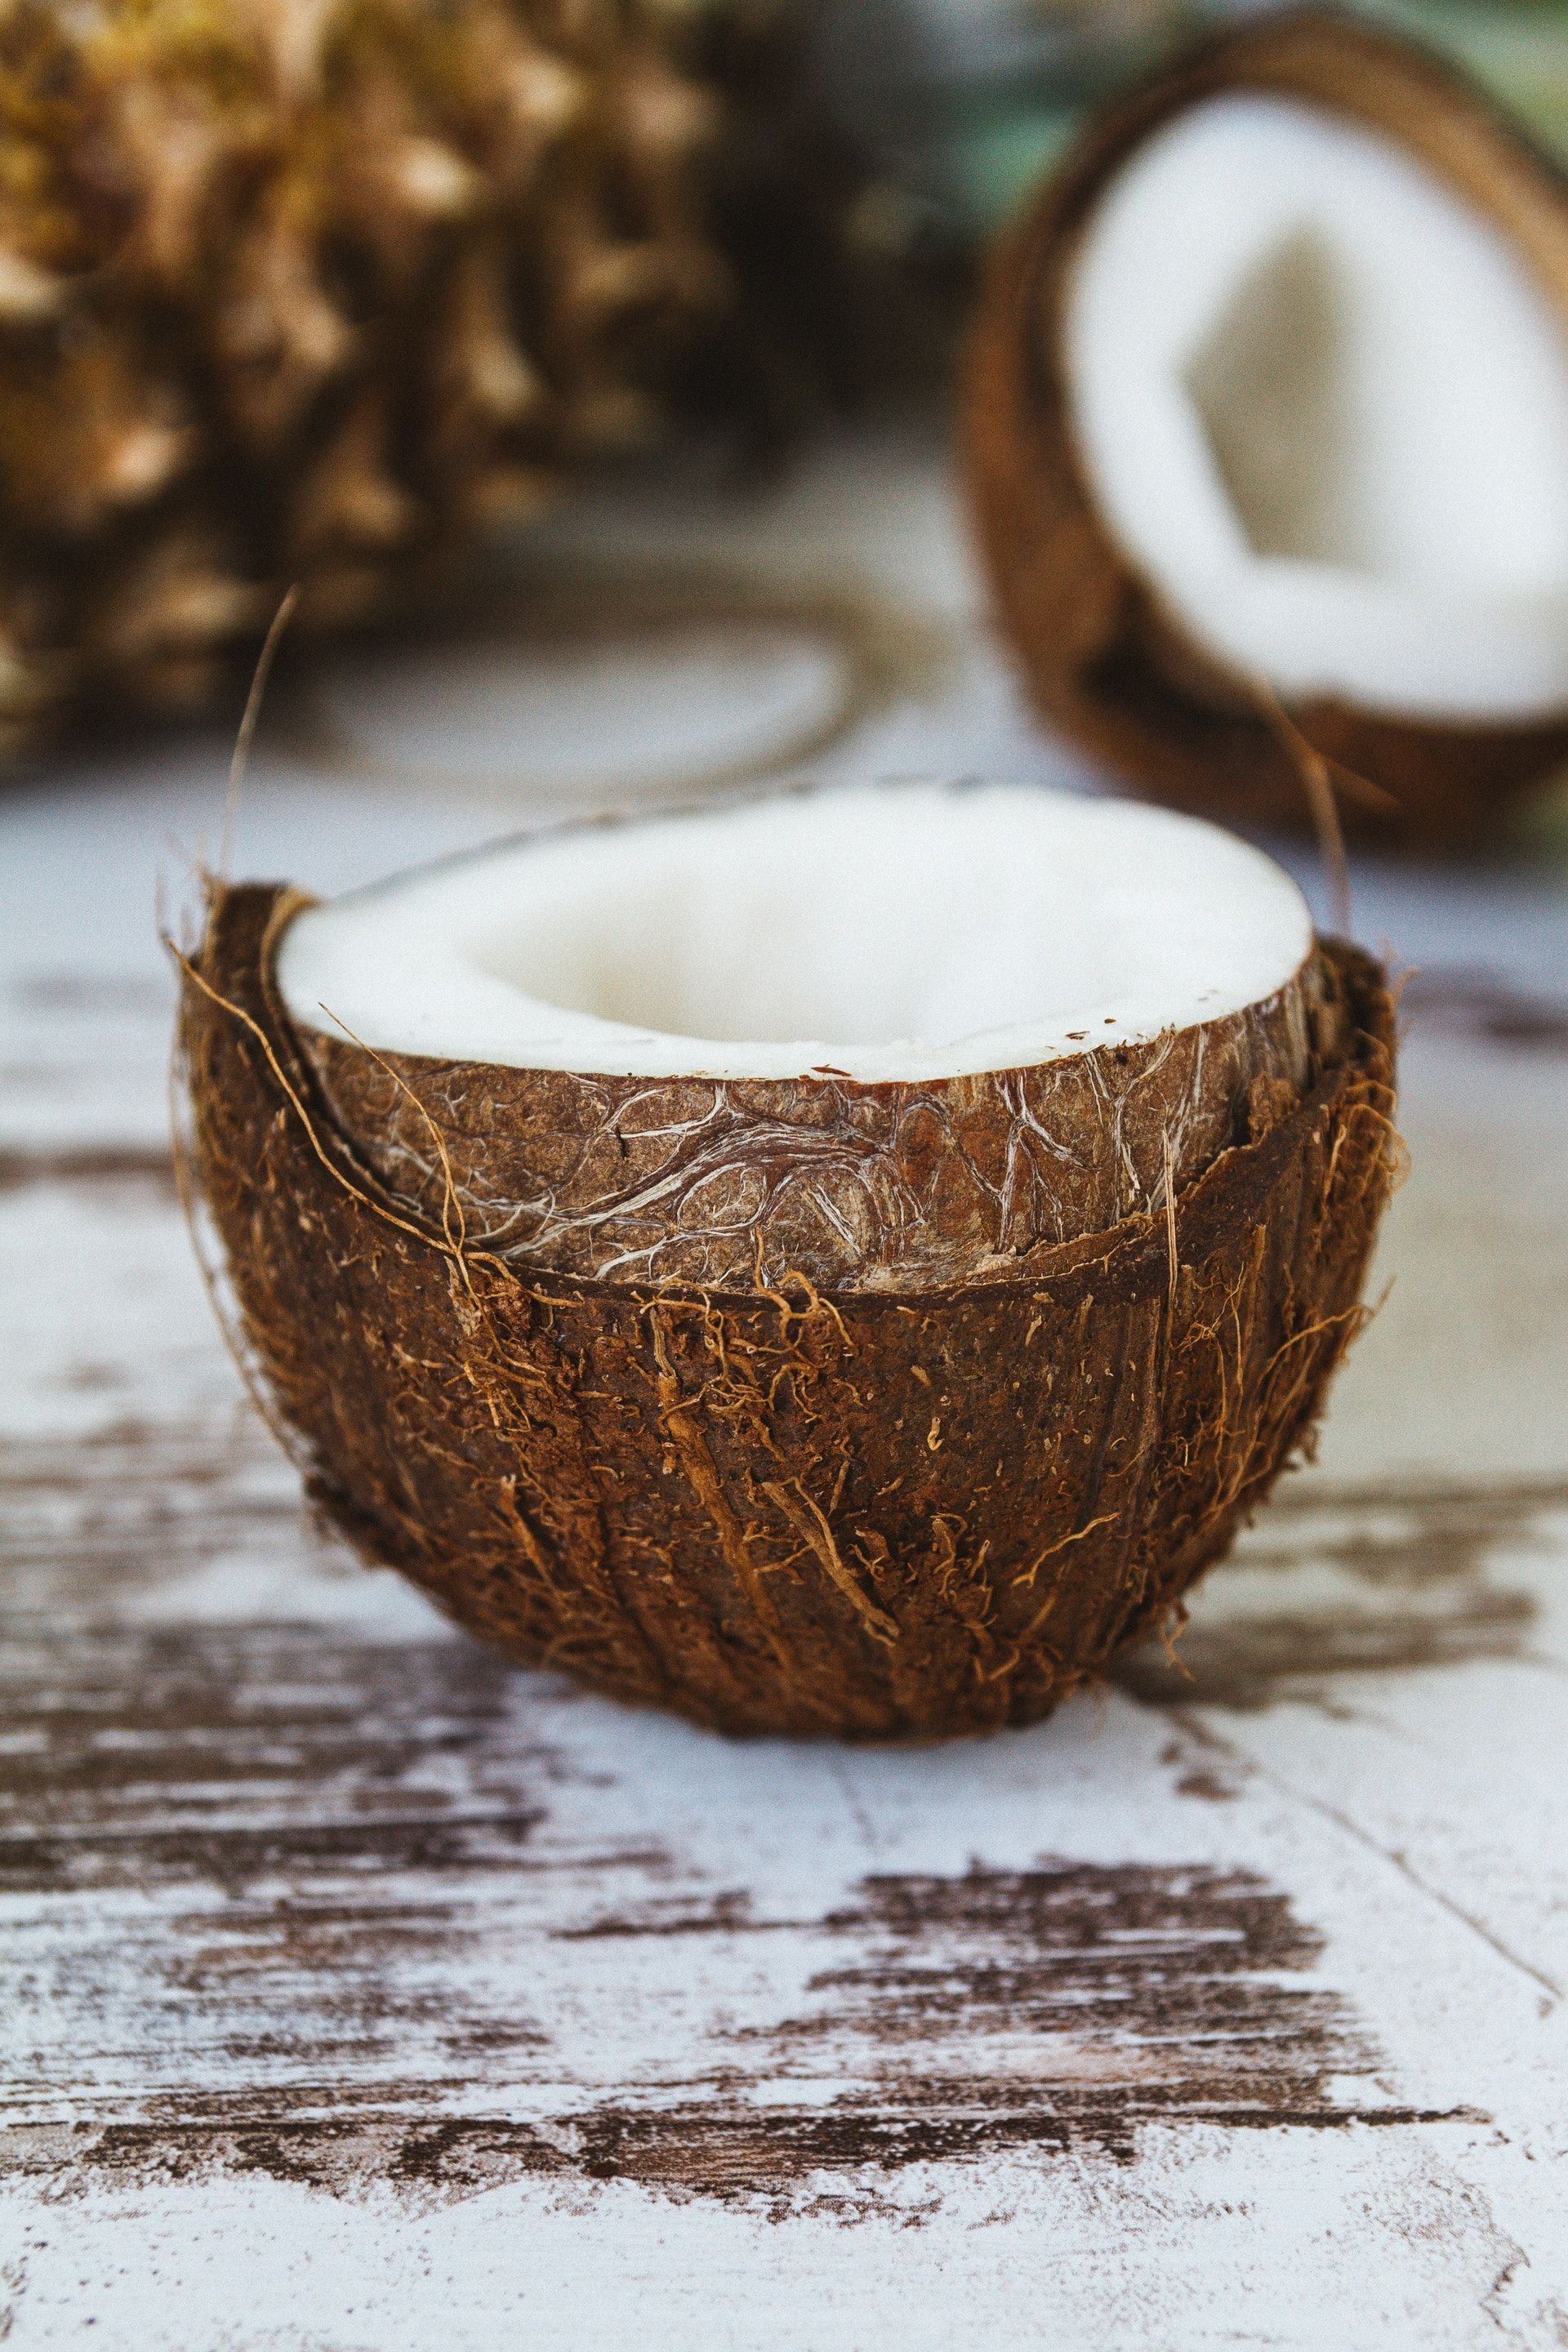 L’huile de coco est-elle mauvaise pour vous? Cinq choses à savoir avant votre prochain achat